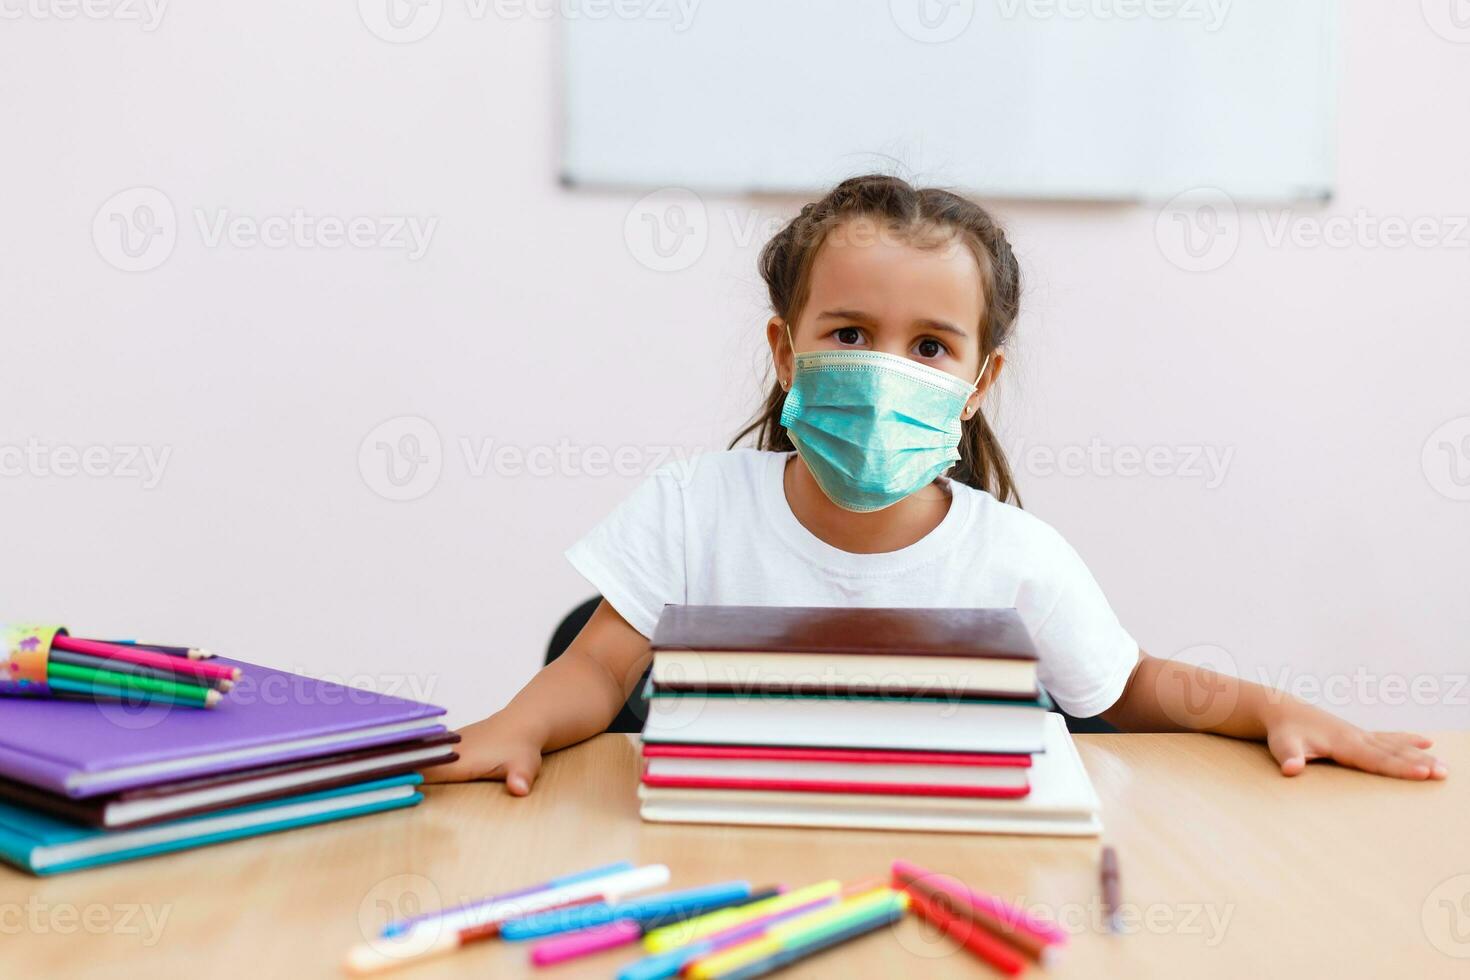 barn flicka studerande bär skyddande medicinsk ansikte mask i skola, epidemi, spridning av coronavirus, covid19, skol med mask till förhindra korona virus infektion, stridande de utbrott av covid-19 foto